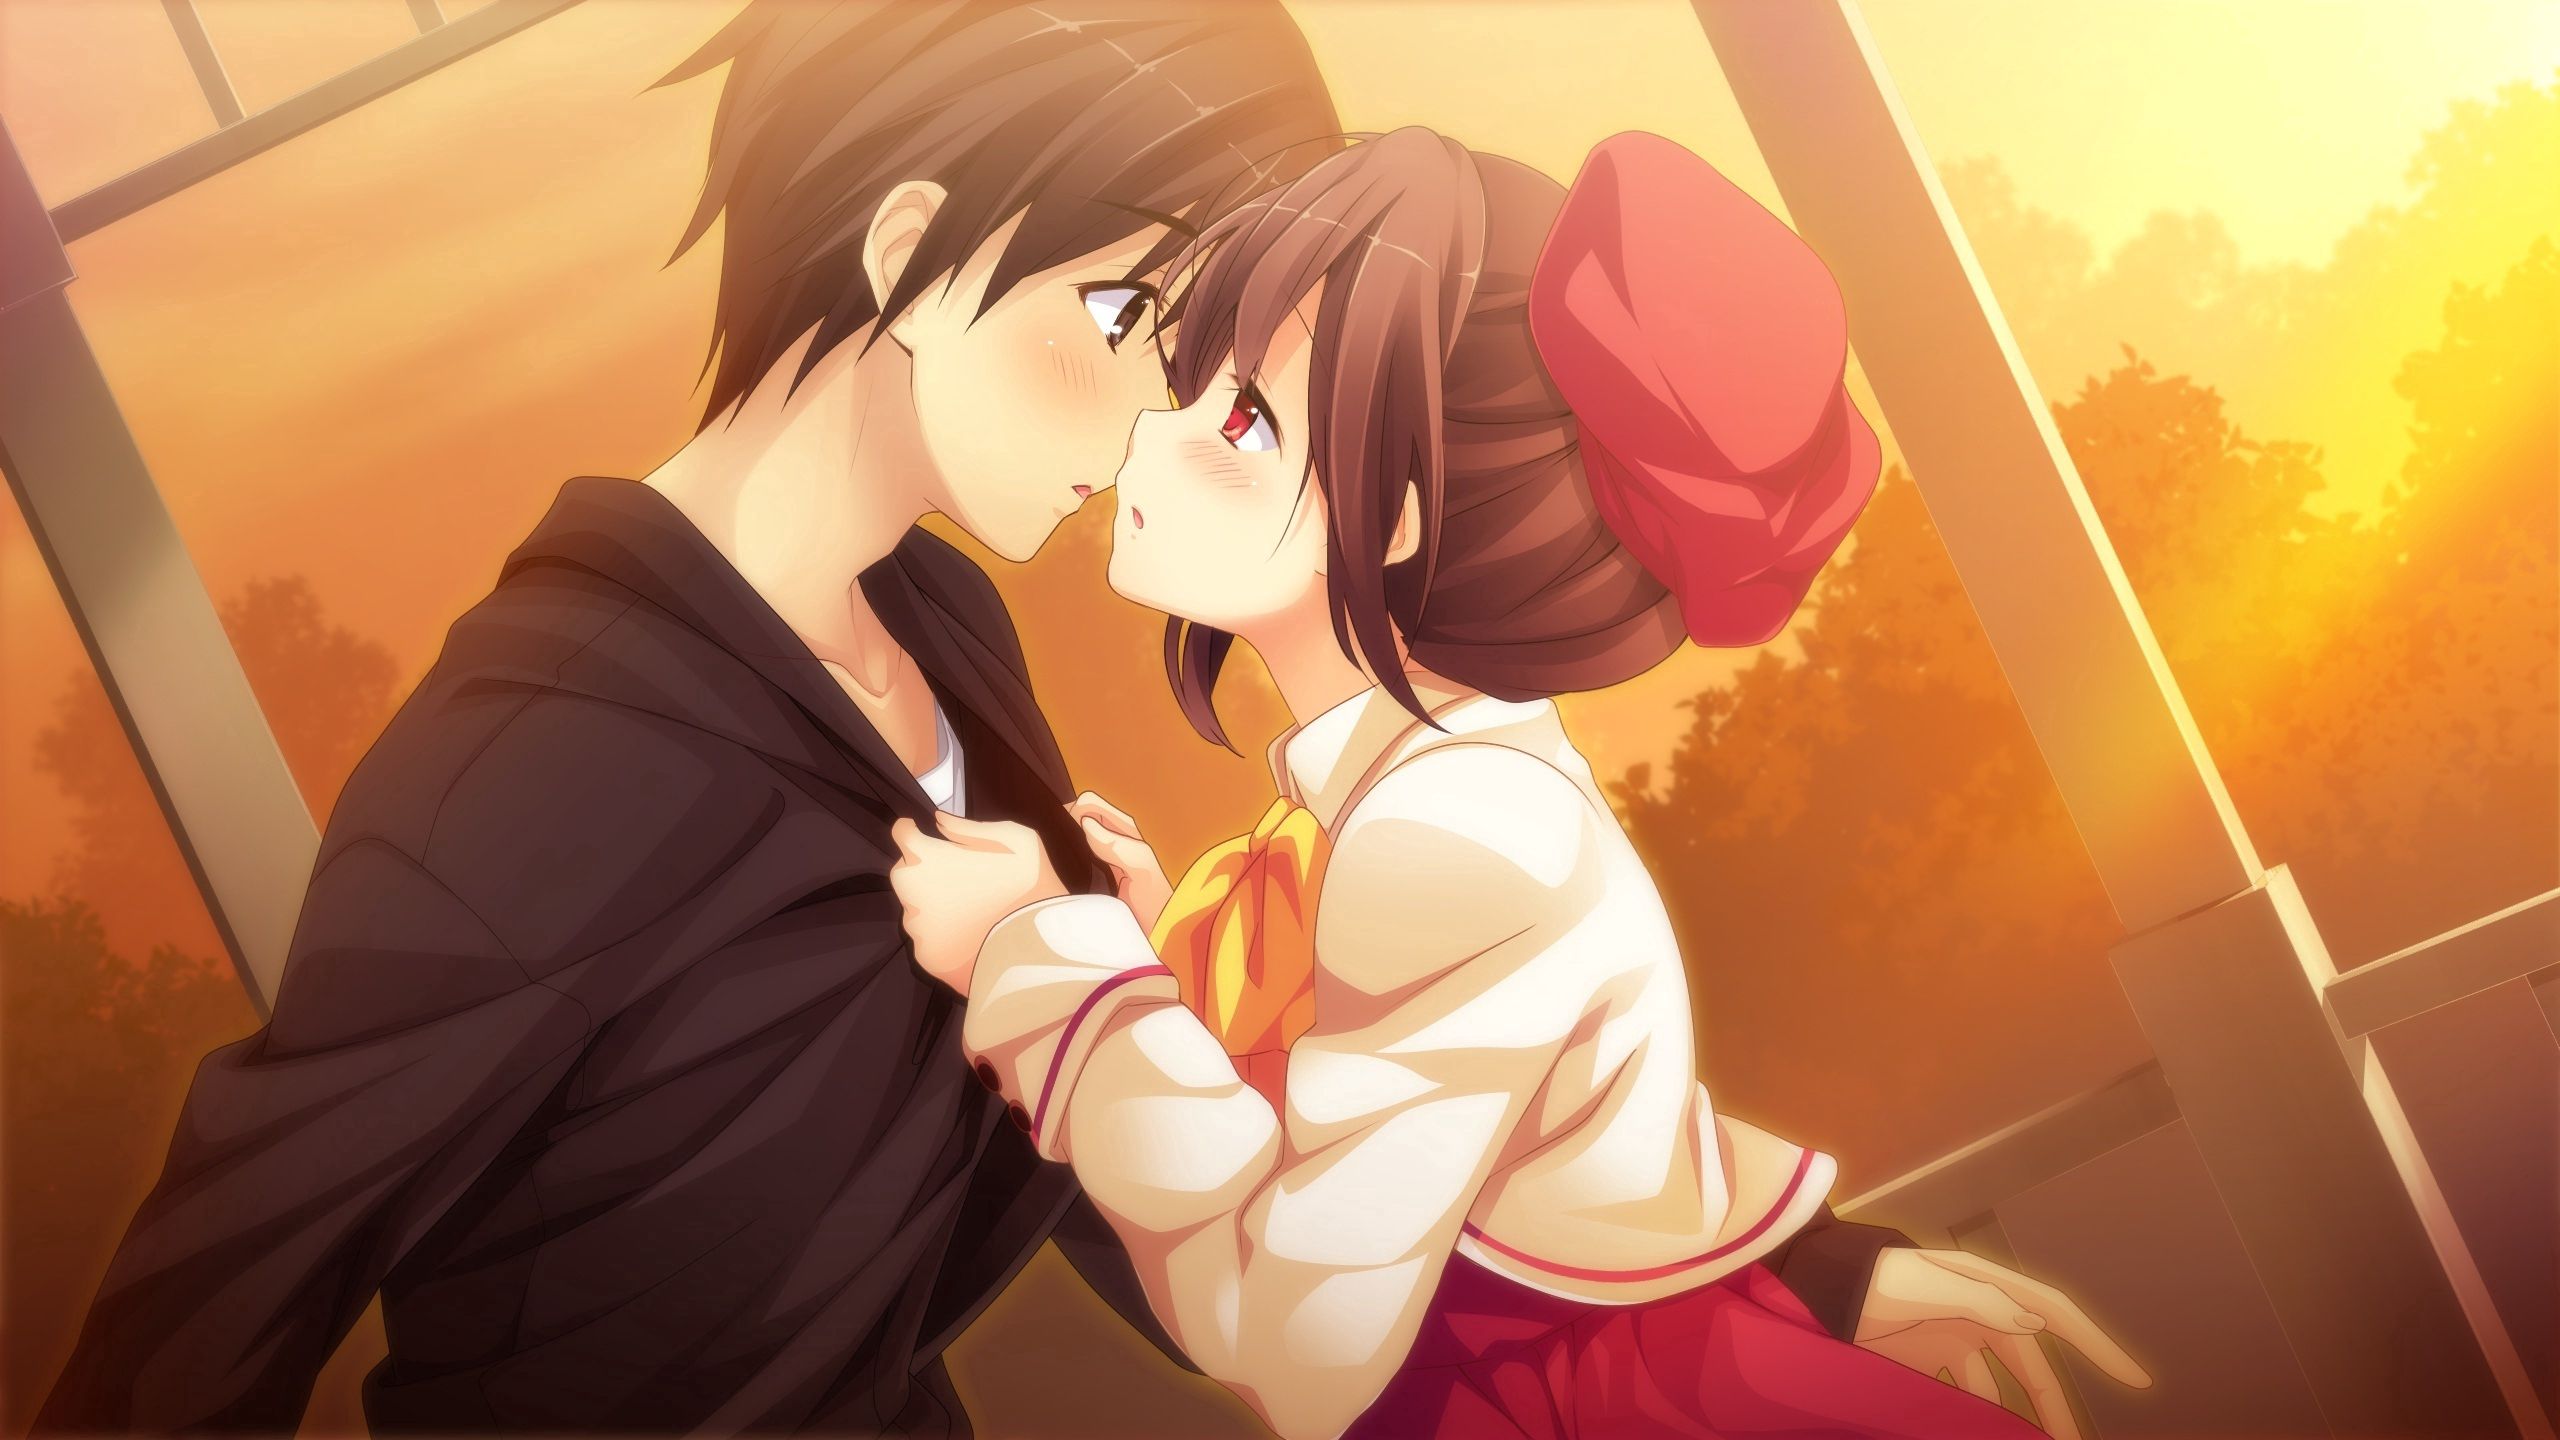 kiss, pair, couple, guy, girl, anime, sunset, art images